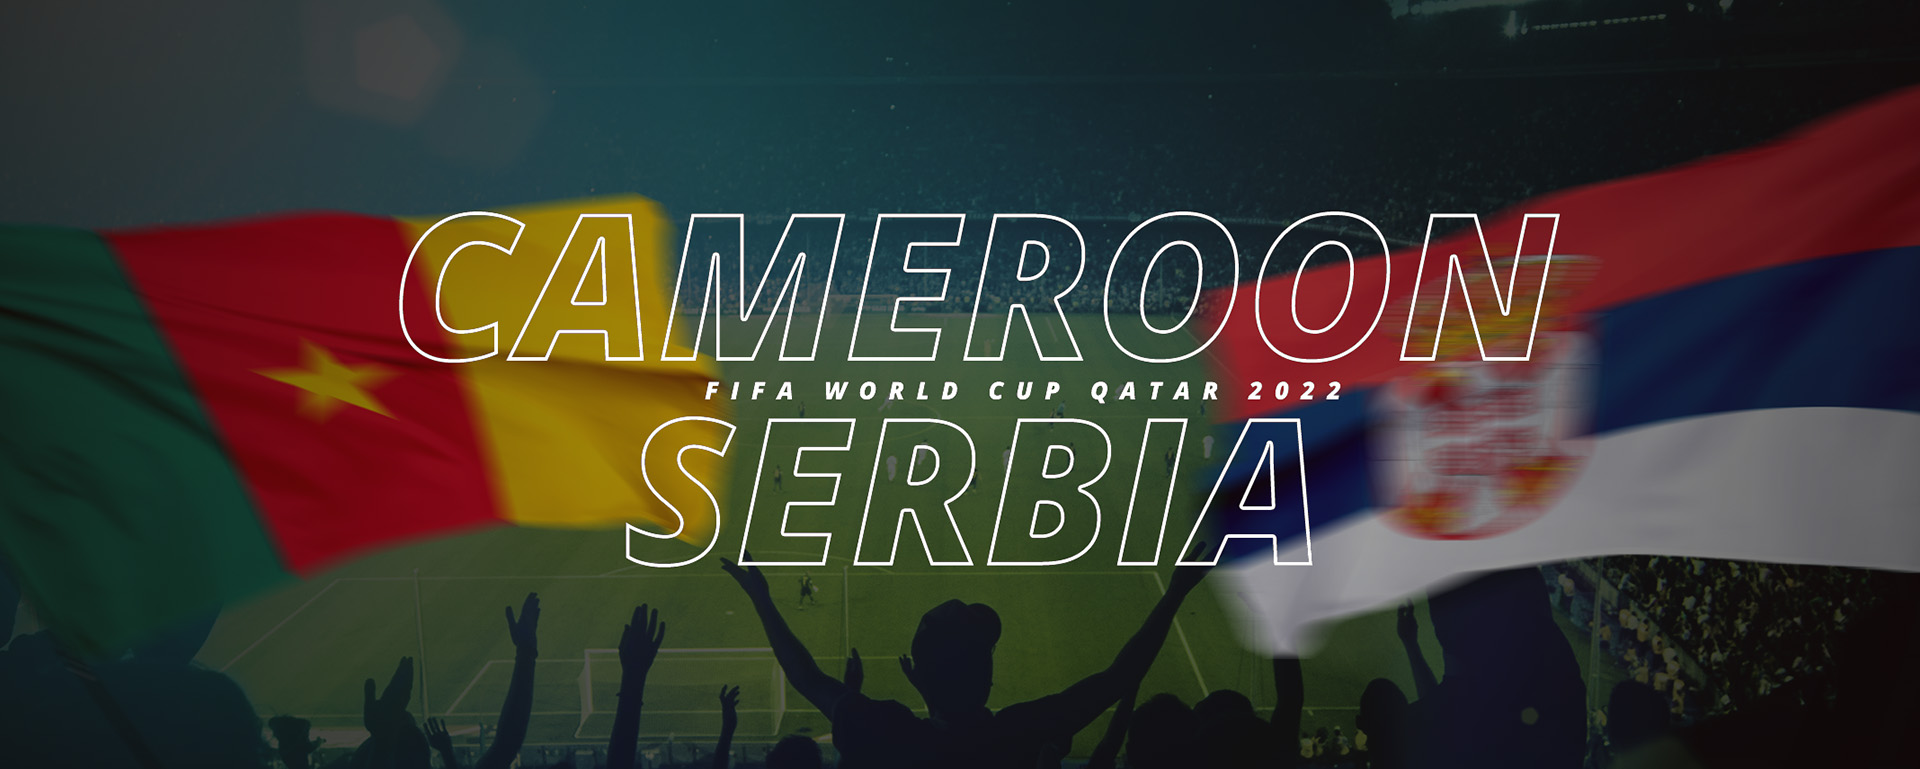 CAMEROON VS SERBIA | FIFA WORLD CUP QATAR 2022